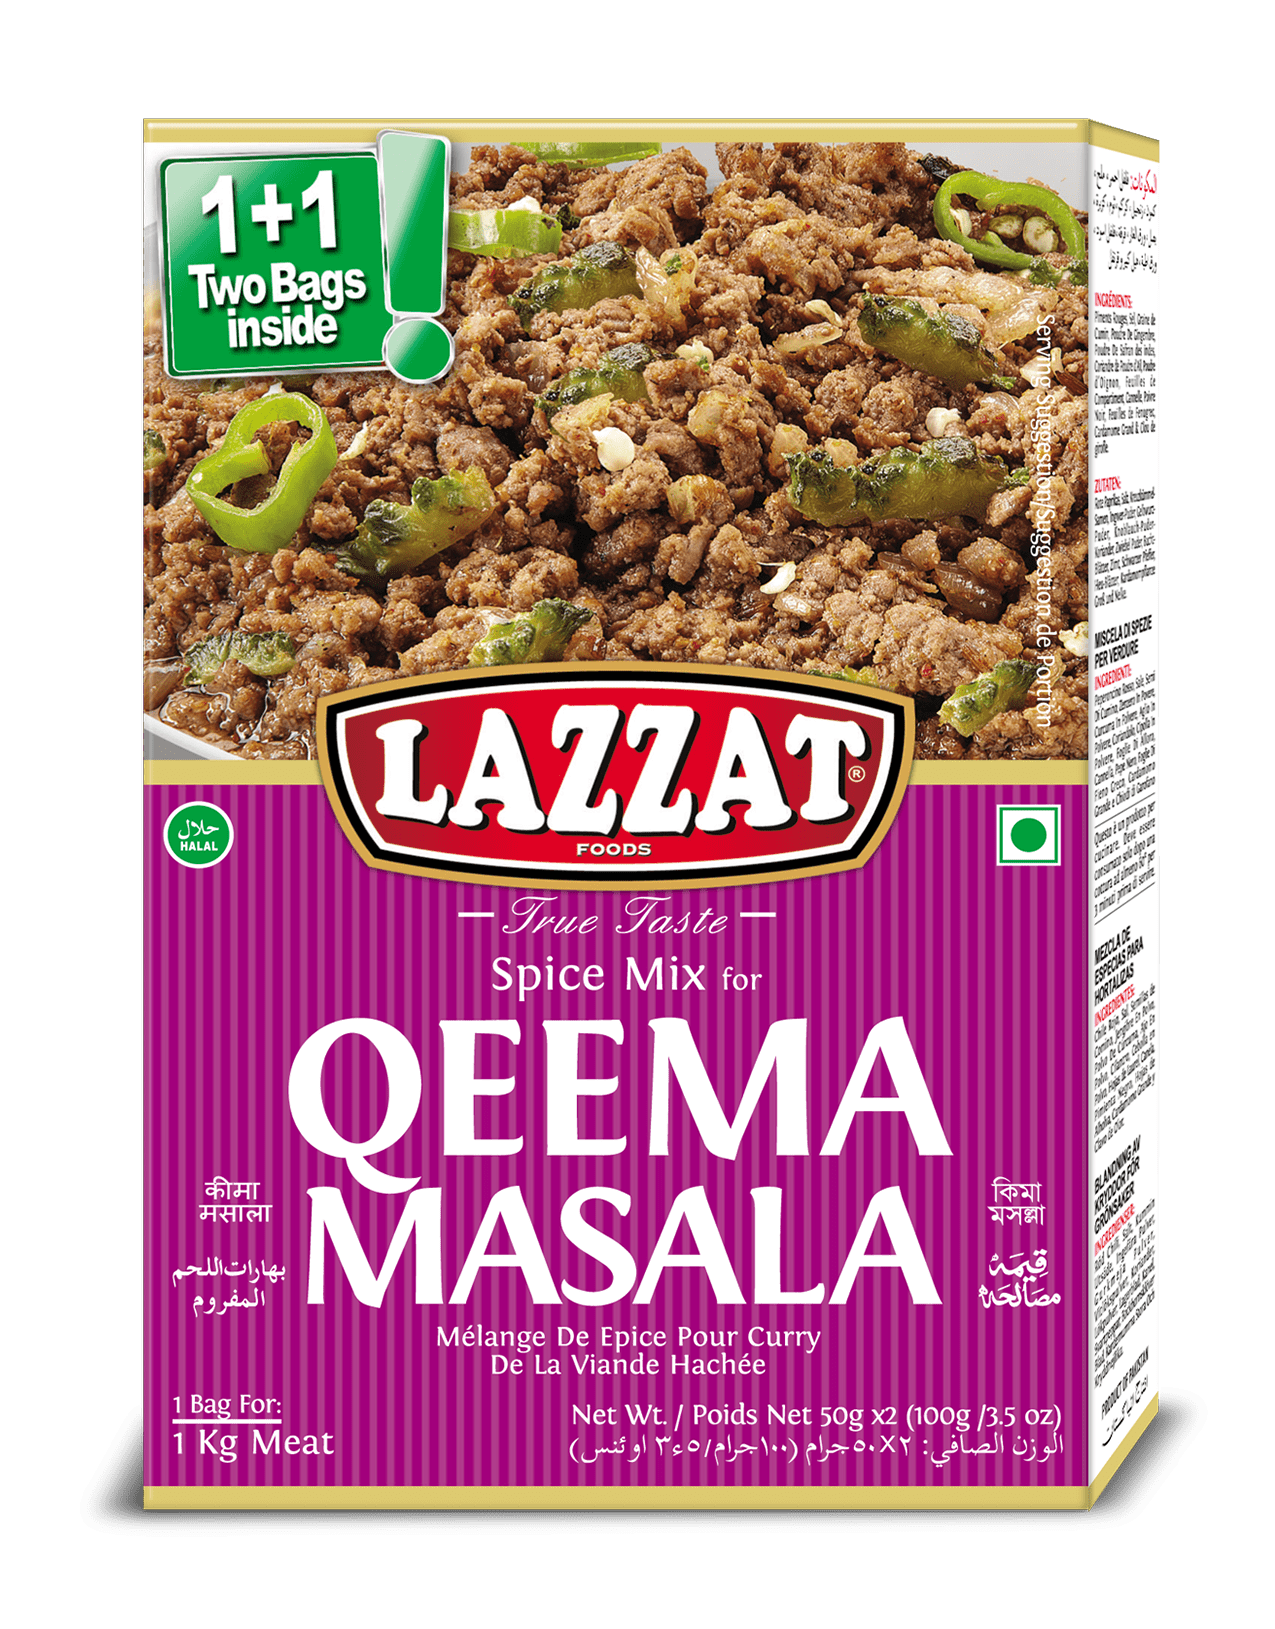 Qeema Masala 100 gm | LAZZAT FOODS - TRUE TASTE